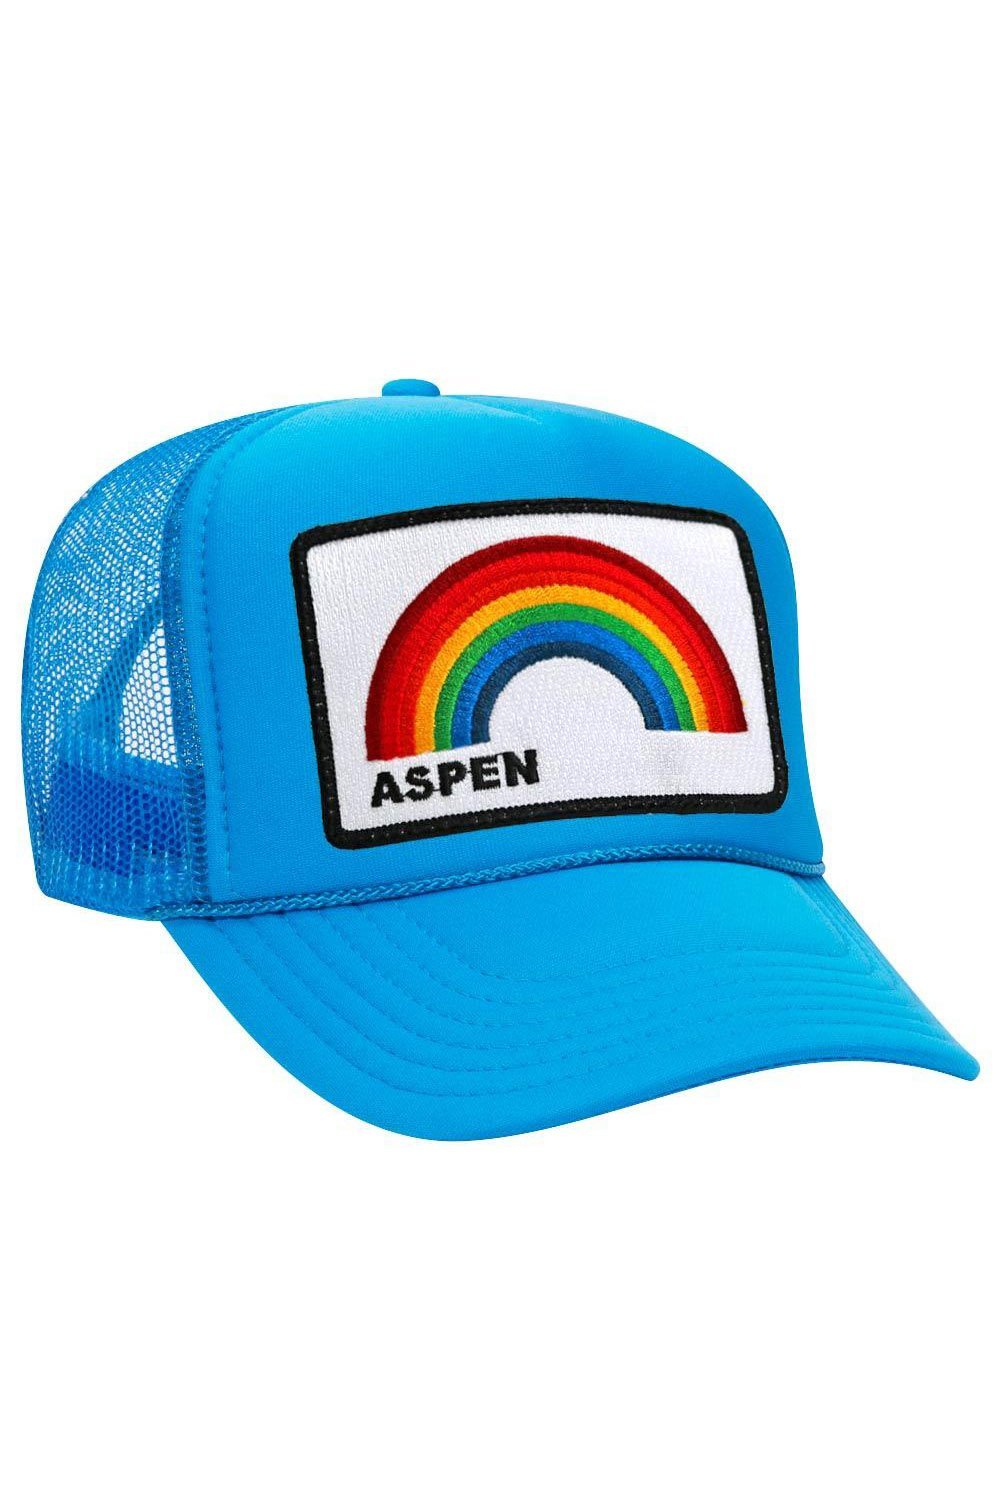 ASPEN RAINBOW TRUCKER HAT HATS Aviator Nation OS NEON BLUE 